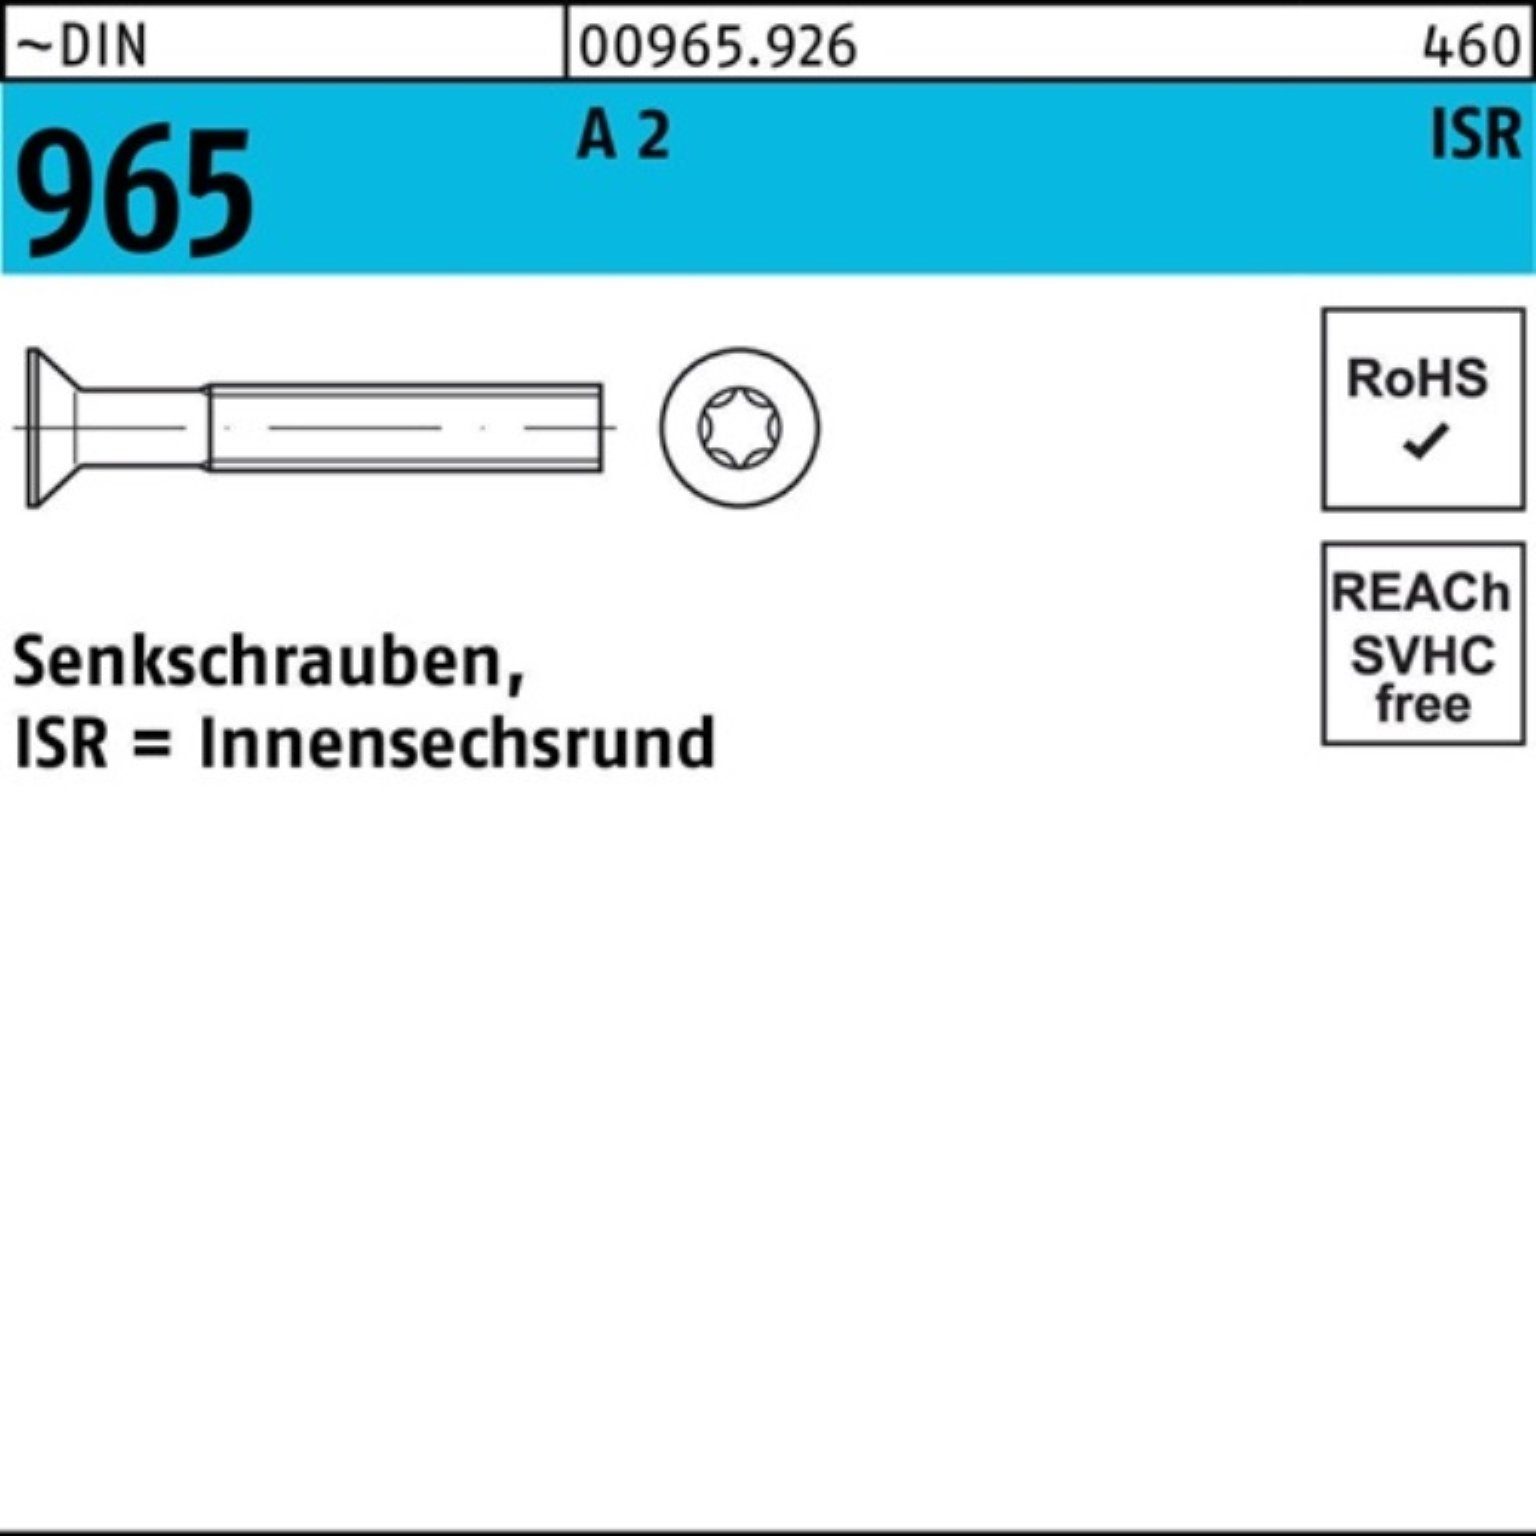 100er ~DIN Reyher Senkschraube 35-T40 ISR 965 965 2 Pack A Senkschraube M8x 100 DIN Stück